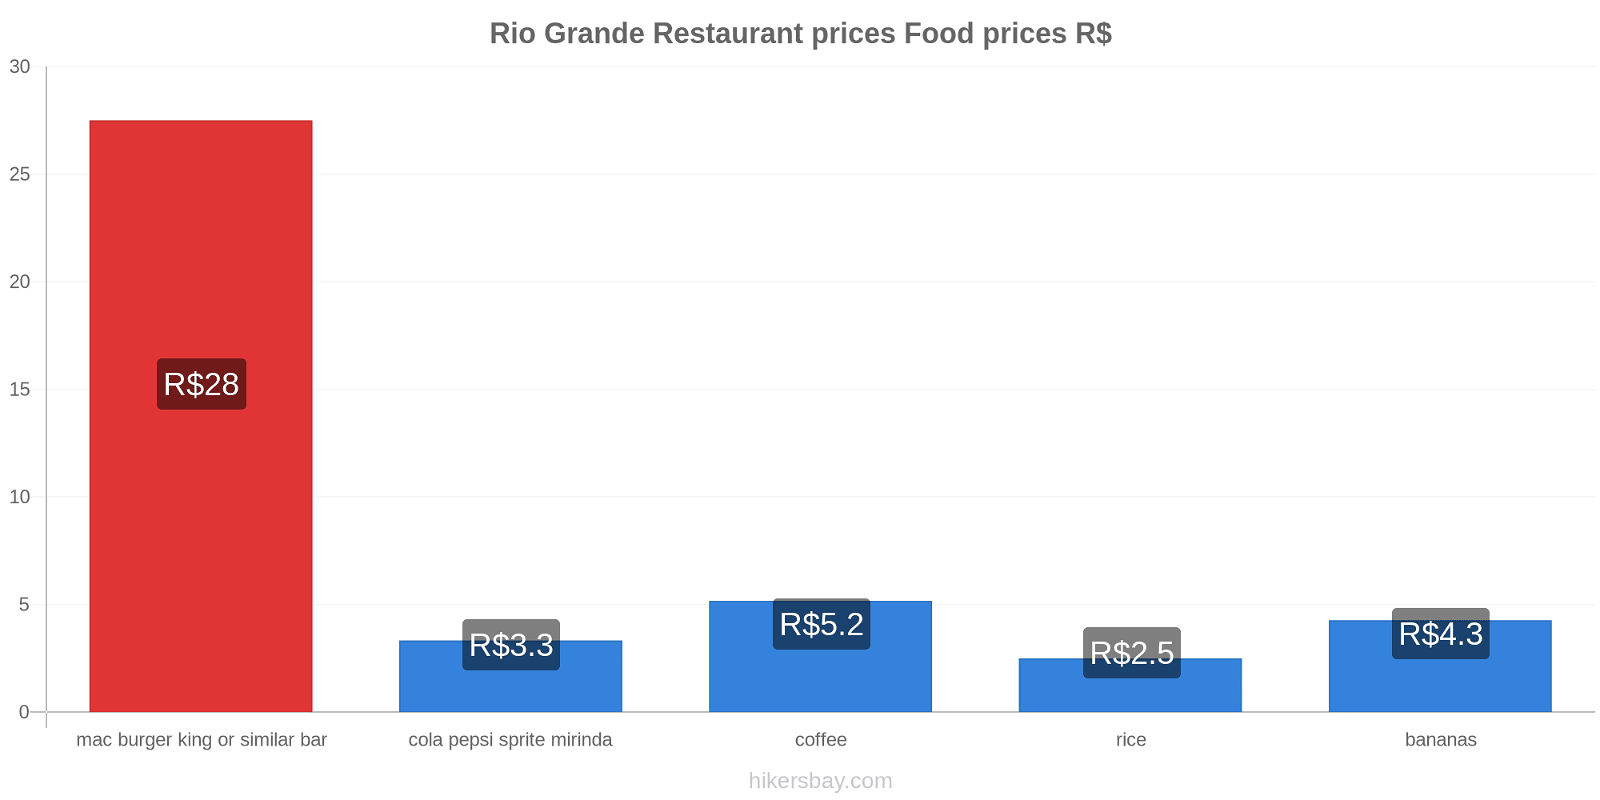 Rio Grande price changes hikersbay.com